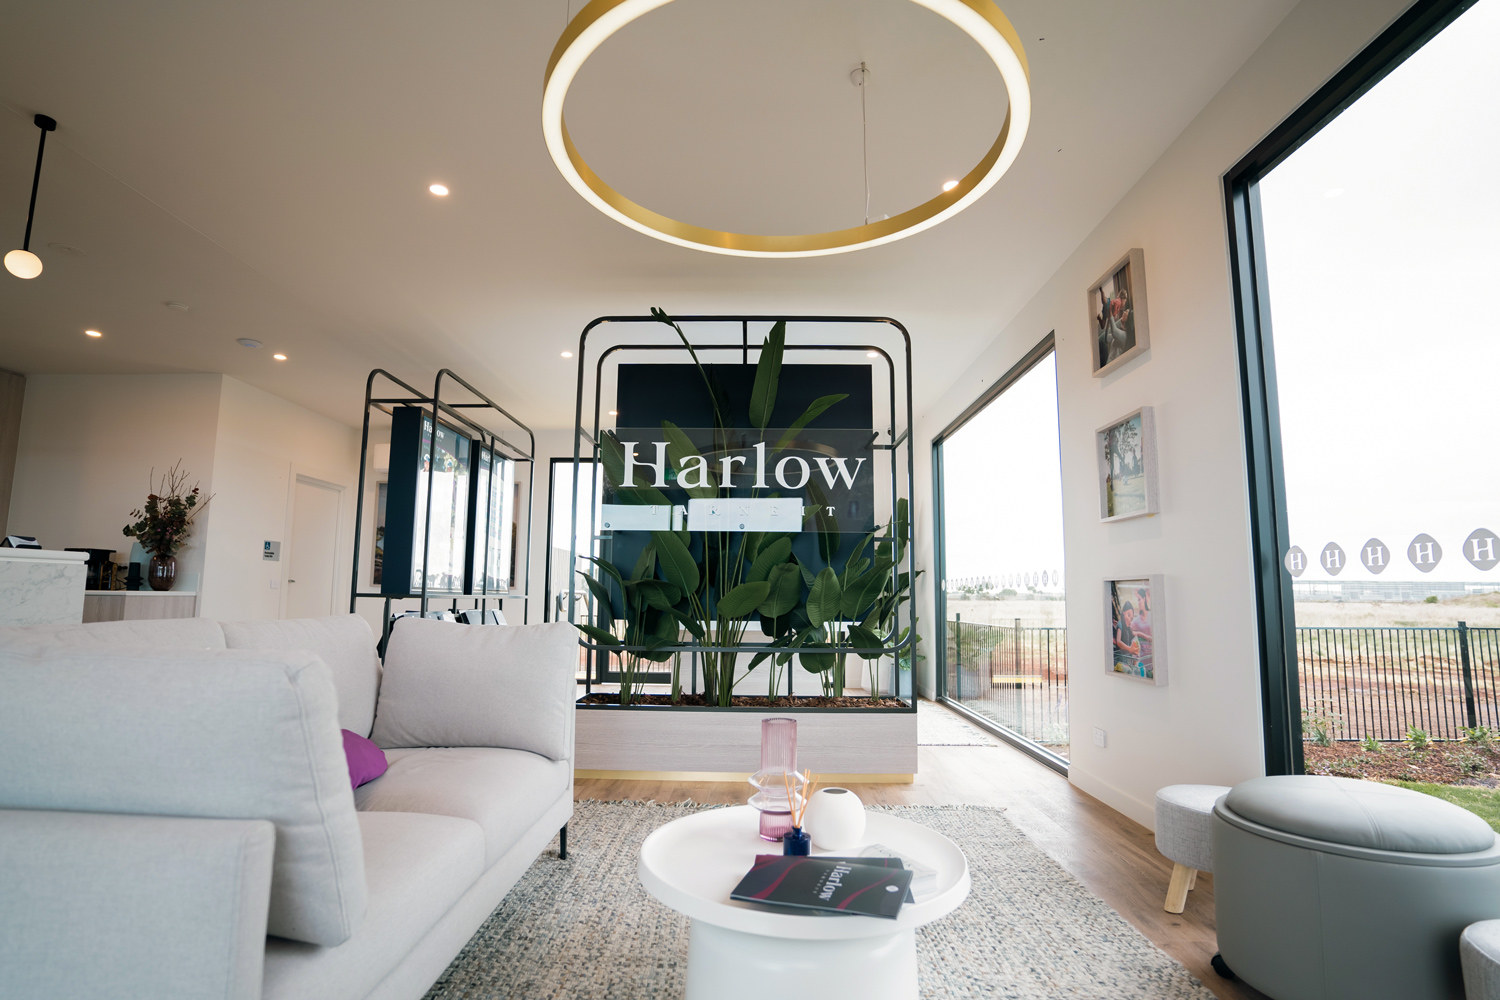 Harlow Tarneit Sales Centre Now Open